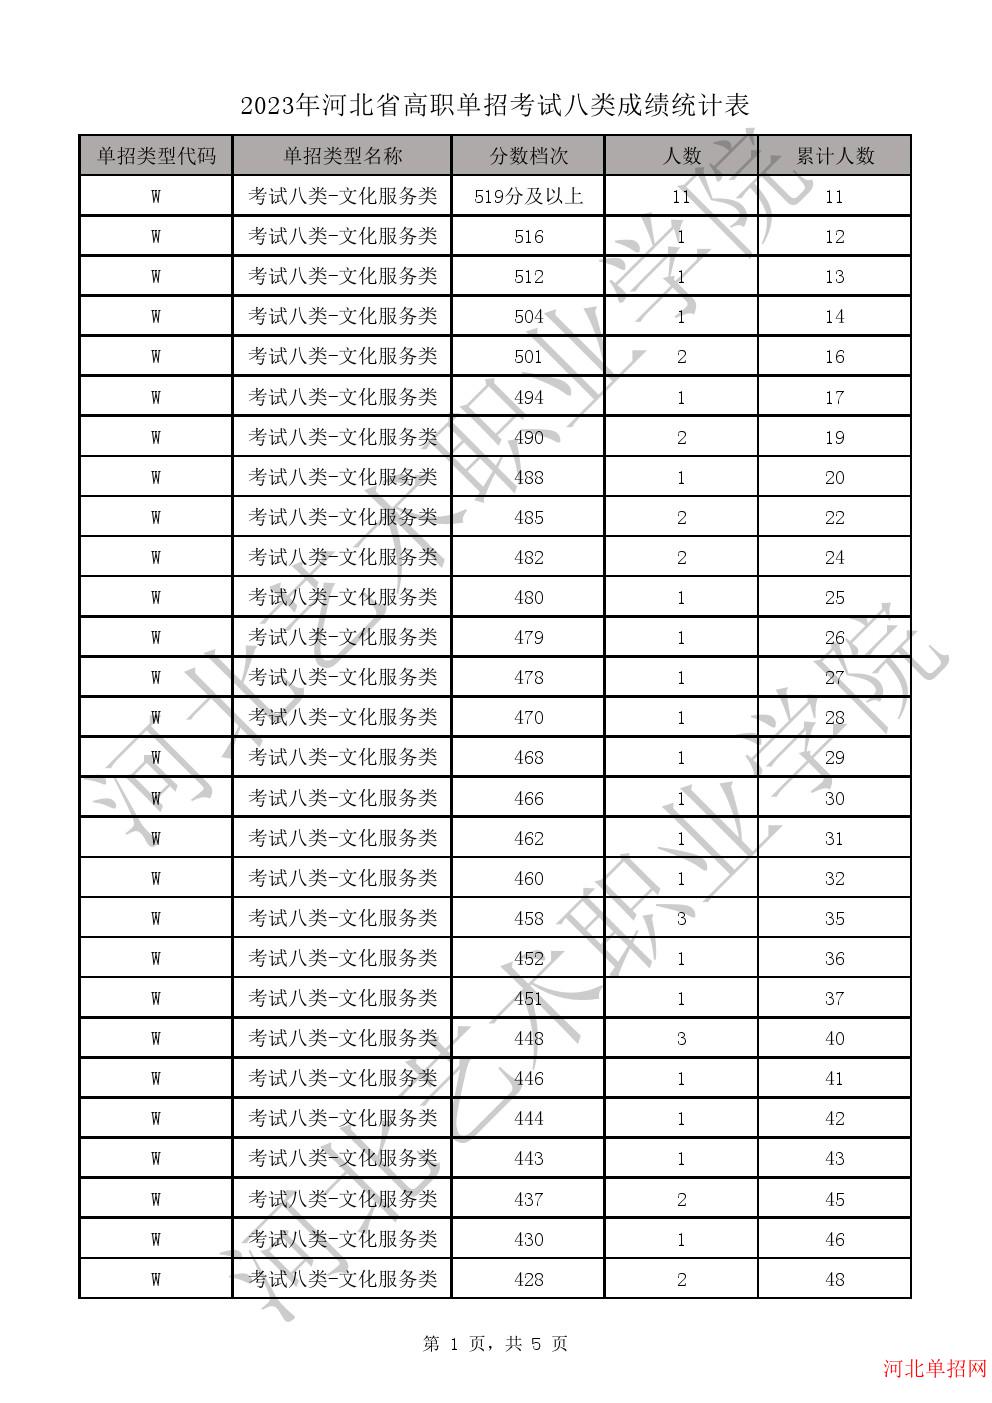 2023年河北省高职单招考试八类一分一档表-W学问服务类一分一档表 图1